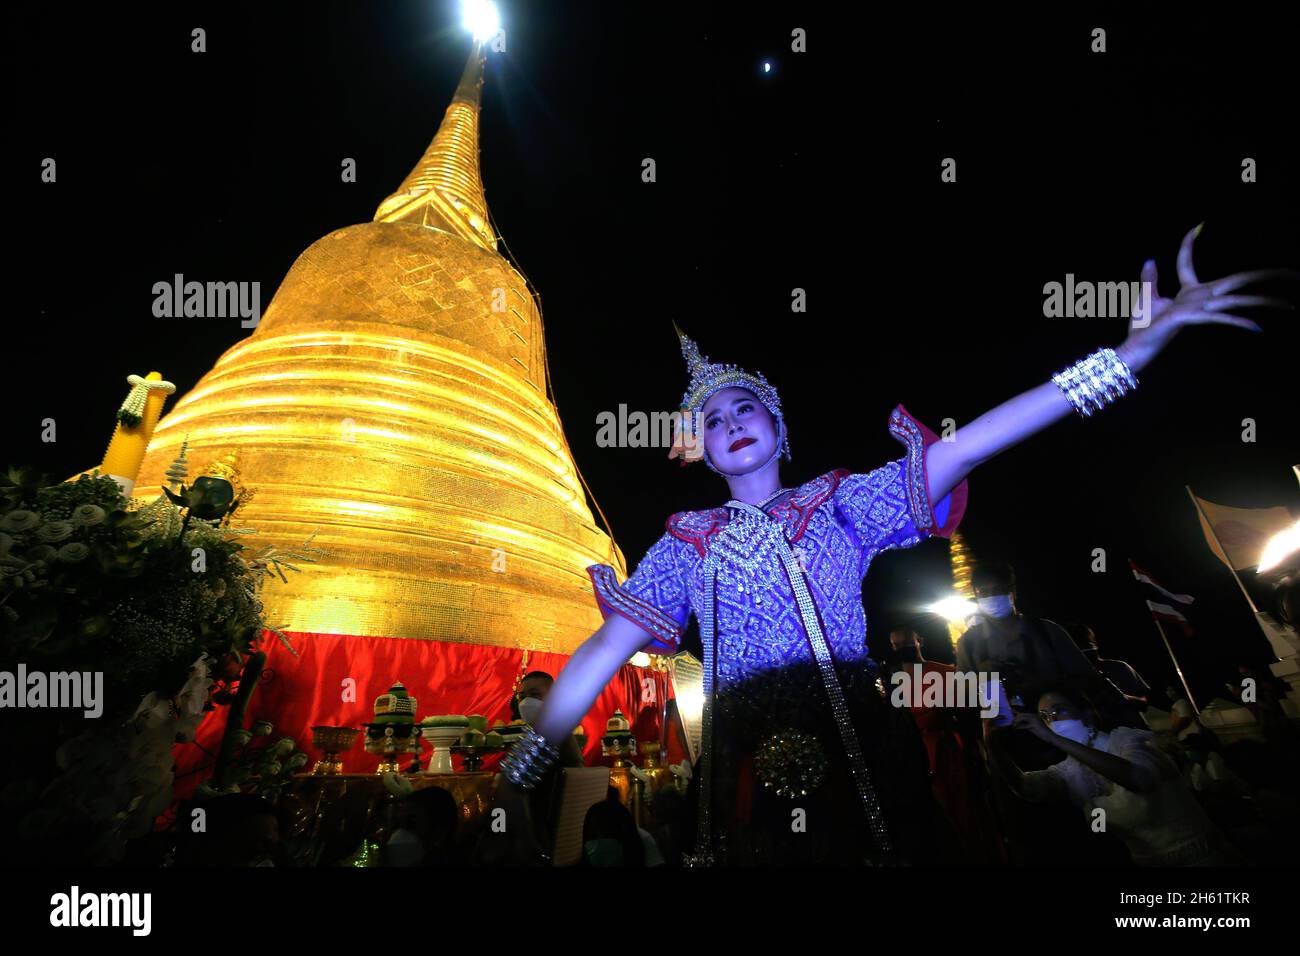 Bangkok, Thailand. November 2021. Eine Tänzerin tritt vor dem Tempel Wat Saket auf, der während des Tempels auch als Goldener Berg bekannt ist und den goldenen Berg mit rotem Tuch umwickelt. Eifrige Anhänger versammelten sich, um den Chedi des Goldenen Berges mit einem heiligen roten Tuch zu umwickeln, was den Beginn des Wat Saket-Festivals markierte. Bevor sich die Gläubigen zu einer multikulturellen Parade anstellten, die aus Löwentänzern, traditionellen thailändischen Tänzern, Studenten der Tempelschule und spirituellen Brahmanen bestand. Namen von Familien und Angehörigen wurden in der Hoffnung, ein gutes Fortu zu erreichen, auf die über hundert Meter lange Strecke geschrieben Stockfoto